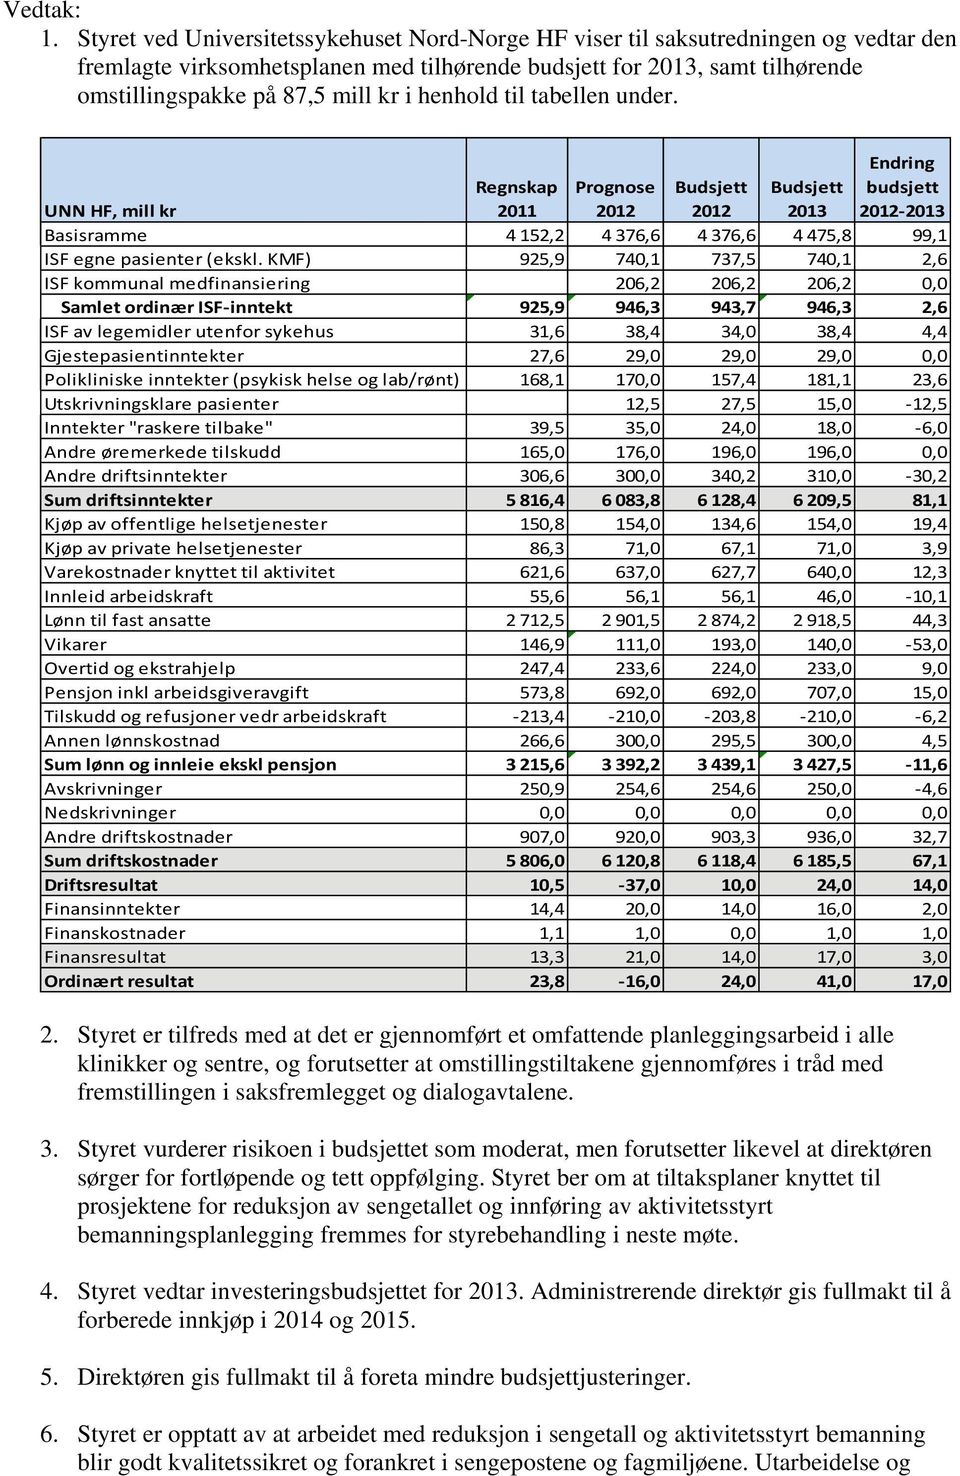 UNN HF, mill kr Regnskap 2011 Prognose 2012 Budsjett 2012 Budsjett 2013 Endring budsjett 2012 2013 Basisramme 4 152,2 4 376,6 4 376,6 4 475,8 99,1 ISF egne pasienter (ekskl.